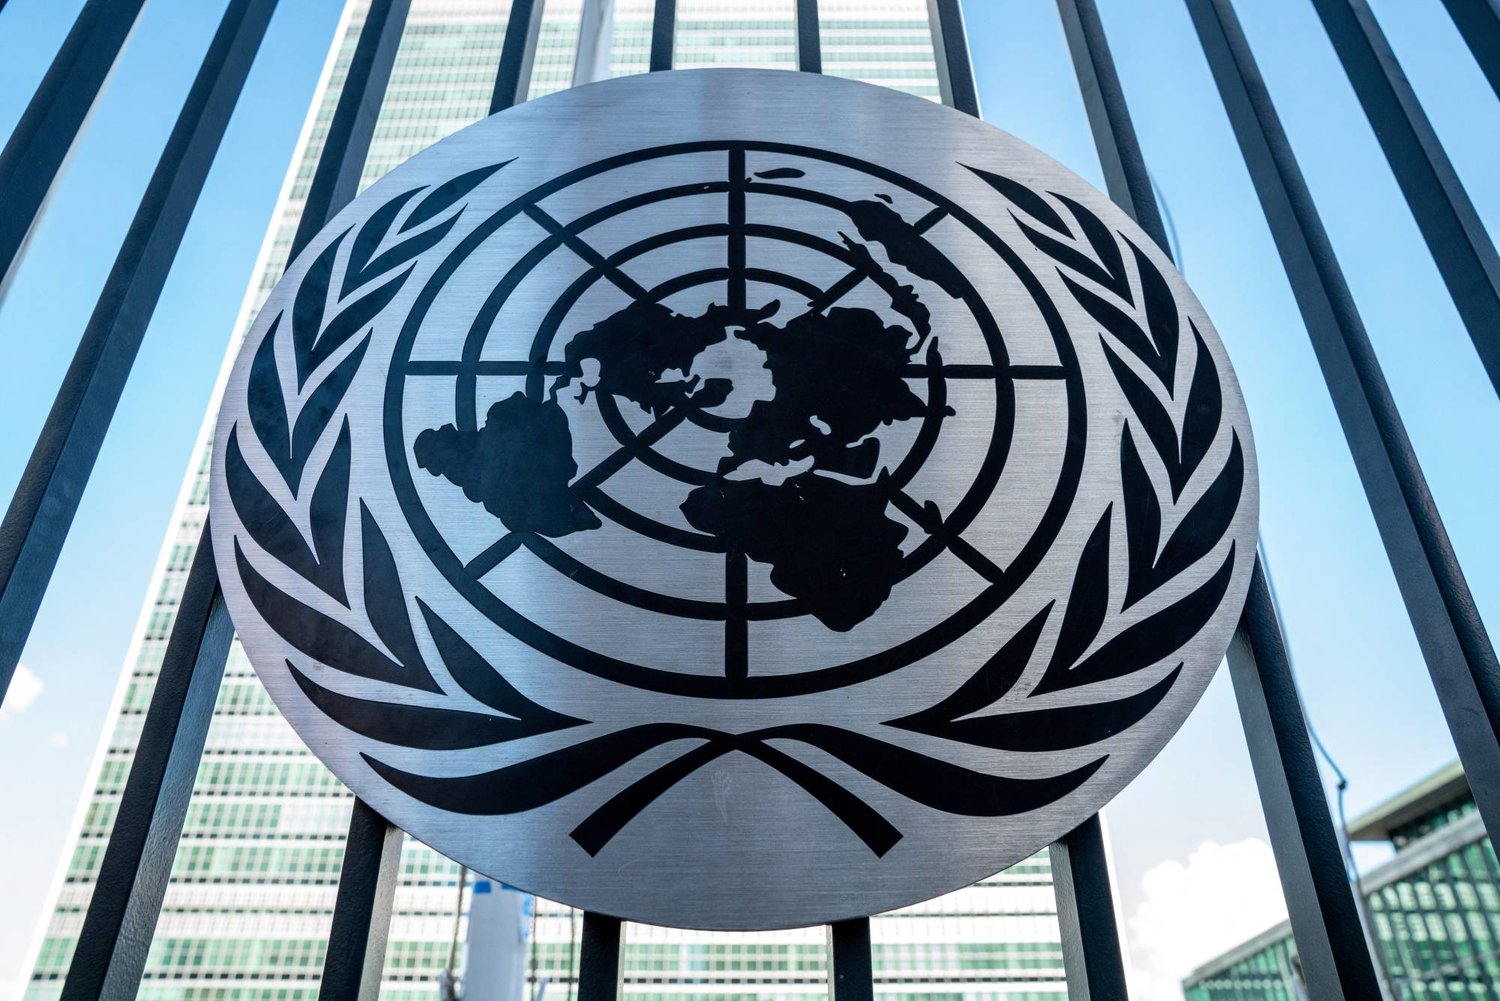 سلطنة عُمان  ندعو للتمسك بمنظومة الأمم المتحدة في معالجة النزاعات